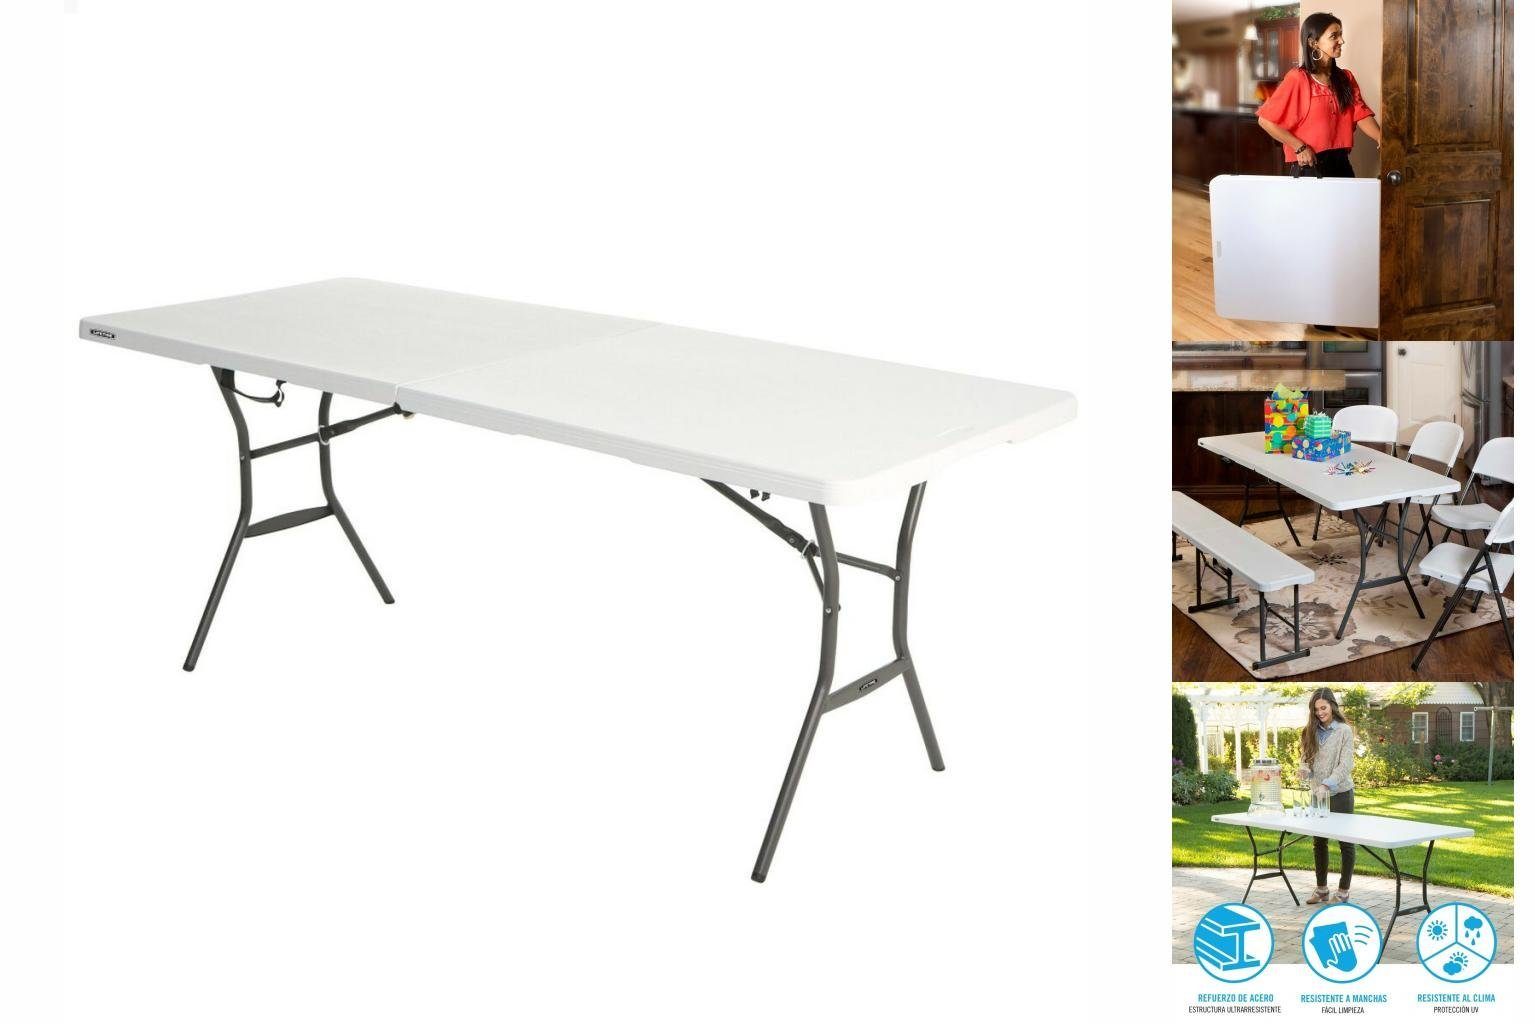 Gartentisch Table Weiß 74 185 Stahl 76 Lifetime Lifetime Gartentisch Kuns x Klapptisch cm x